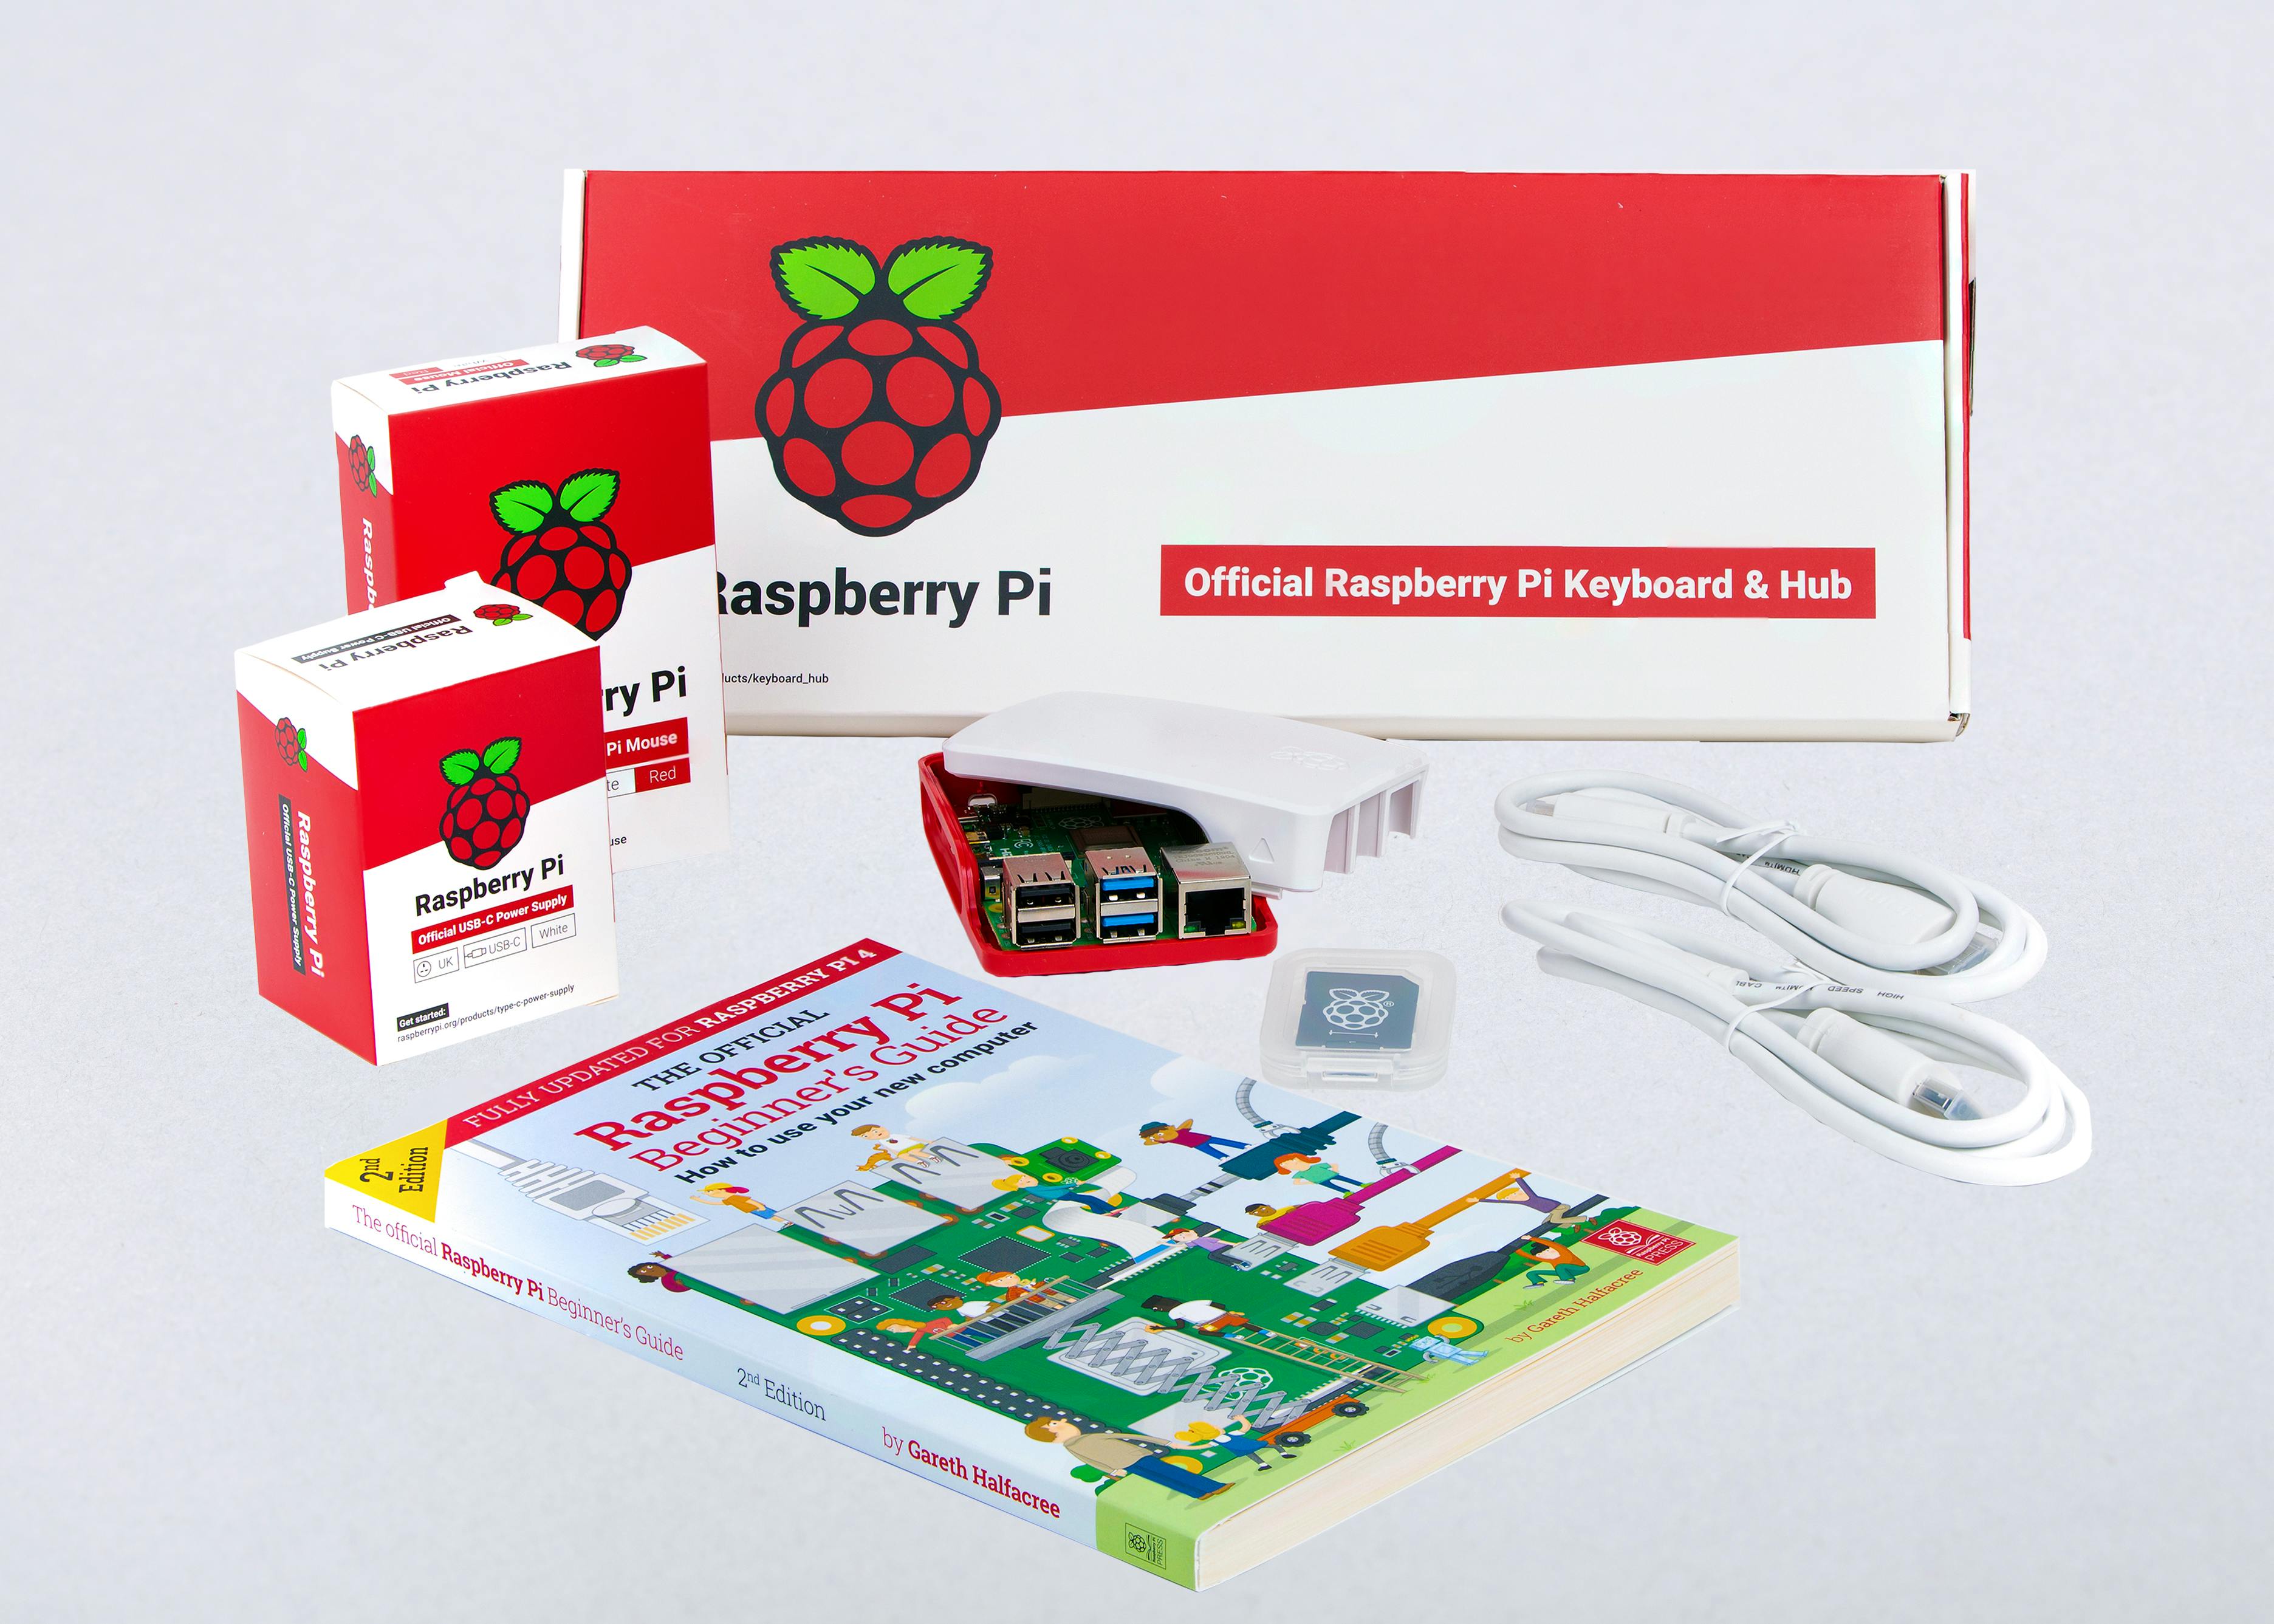 Vilros Raspberry Pi 4 Basic Starter Kit